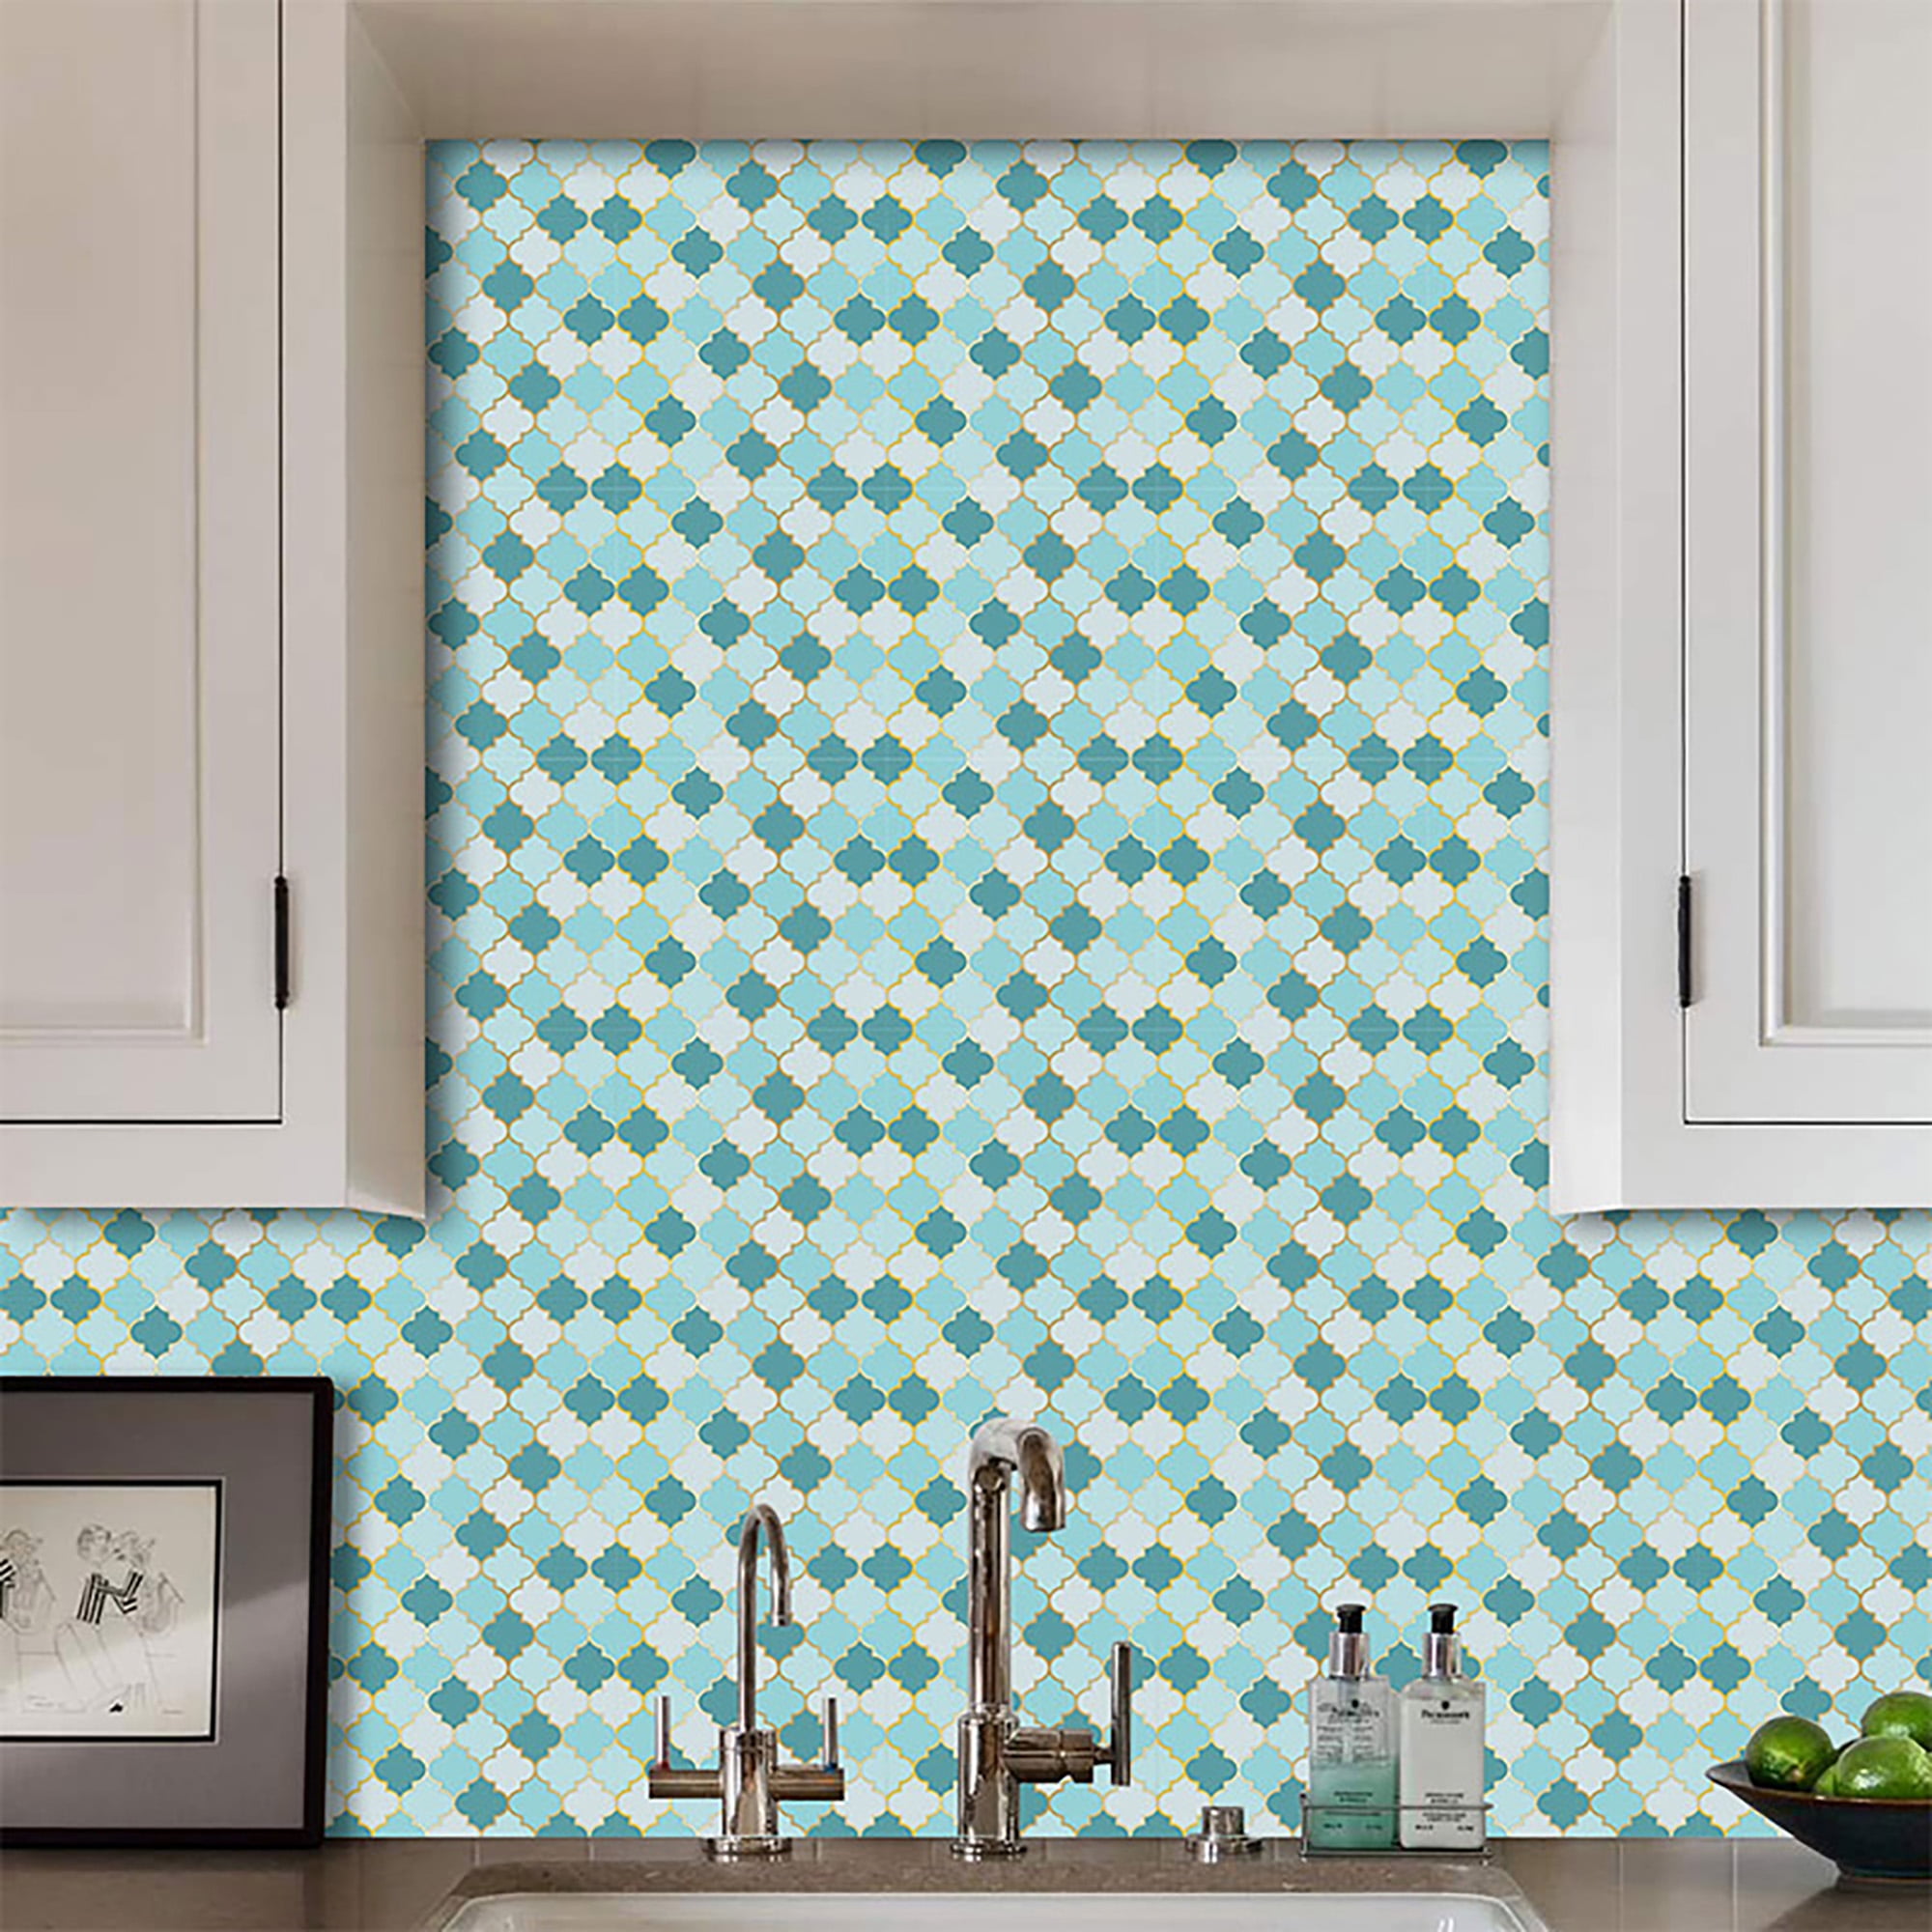 Light Gray Glass Tile Glossy/Polish Tile Kitchen Backsplash Bathroom -  Chery Tile – Chery Tile Inc.